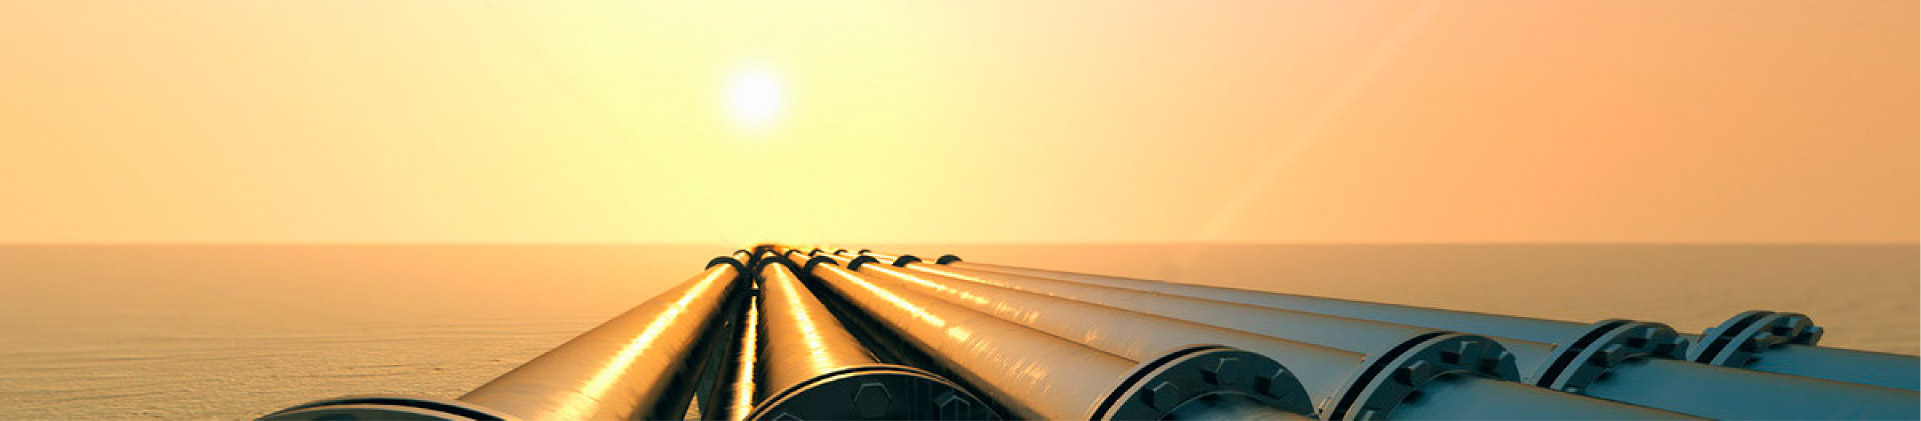 Le compagnie petrolifere russe stanno pianificando di esportare in Cina 2 milioni di tonnellate di c